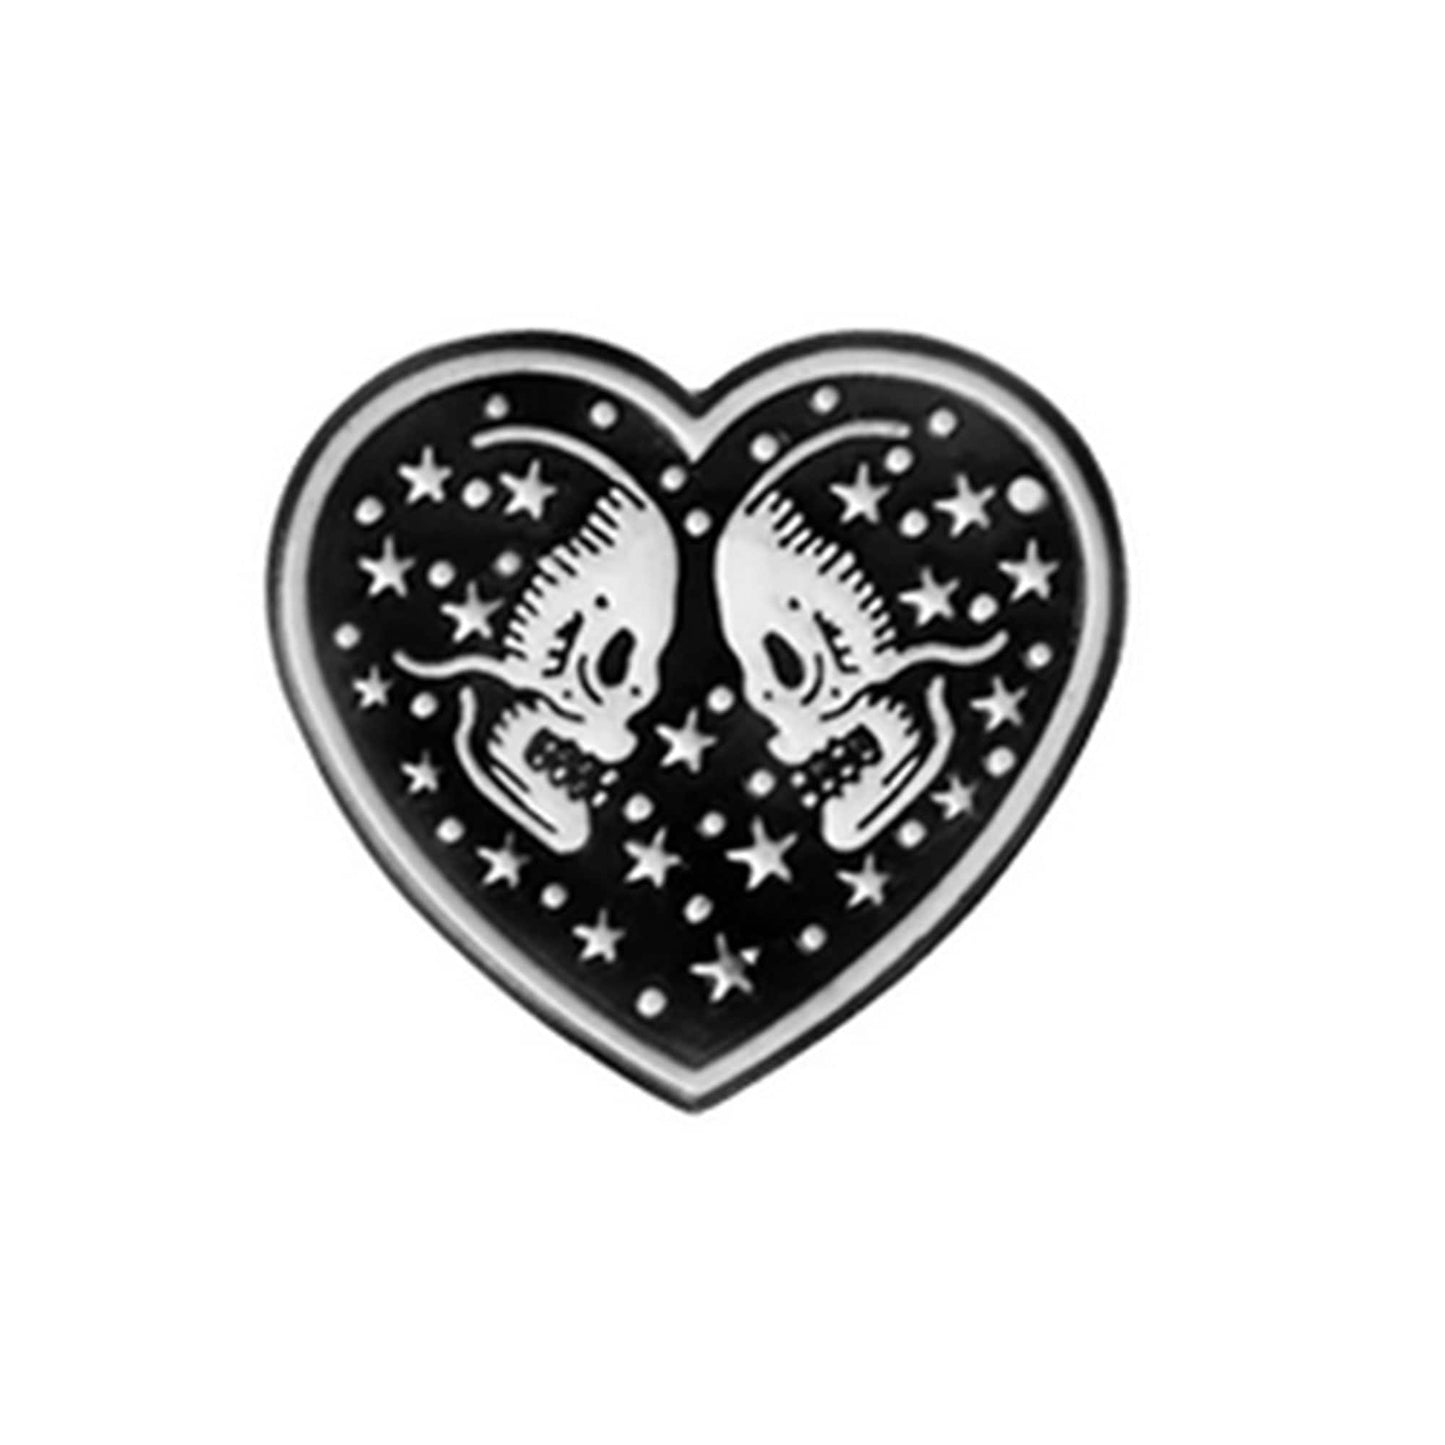 Skeleton Heart Skull Pin, Skull Lovers Enamel Pin, Jewelry Denim Punk Skull Lapel Pin, Calaveras Broche, Skull Heart Brooch, Pin Collection